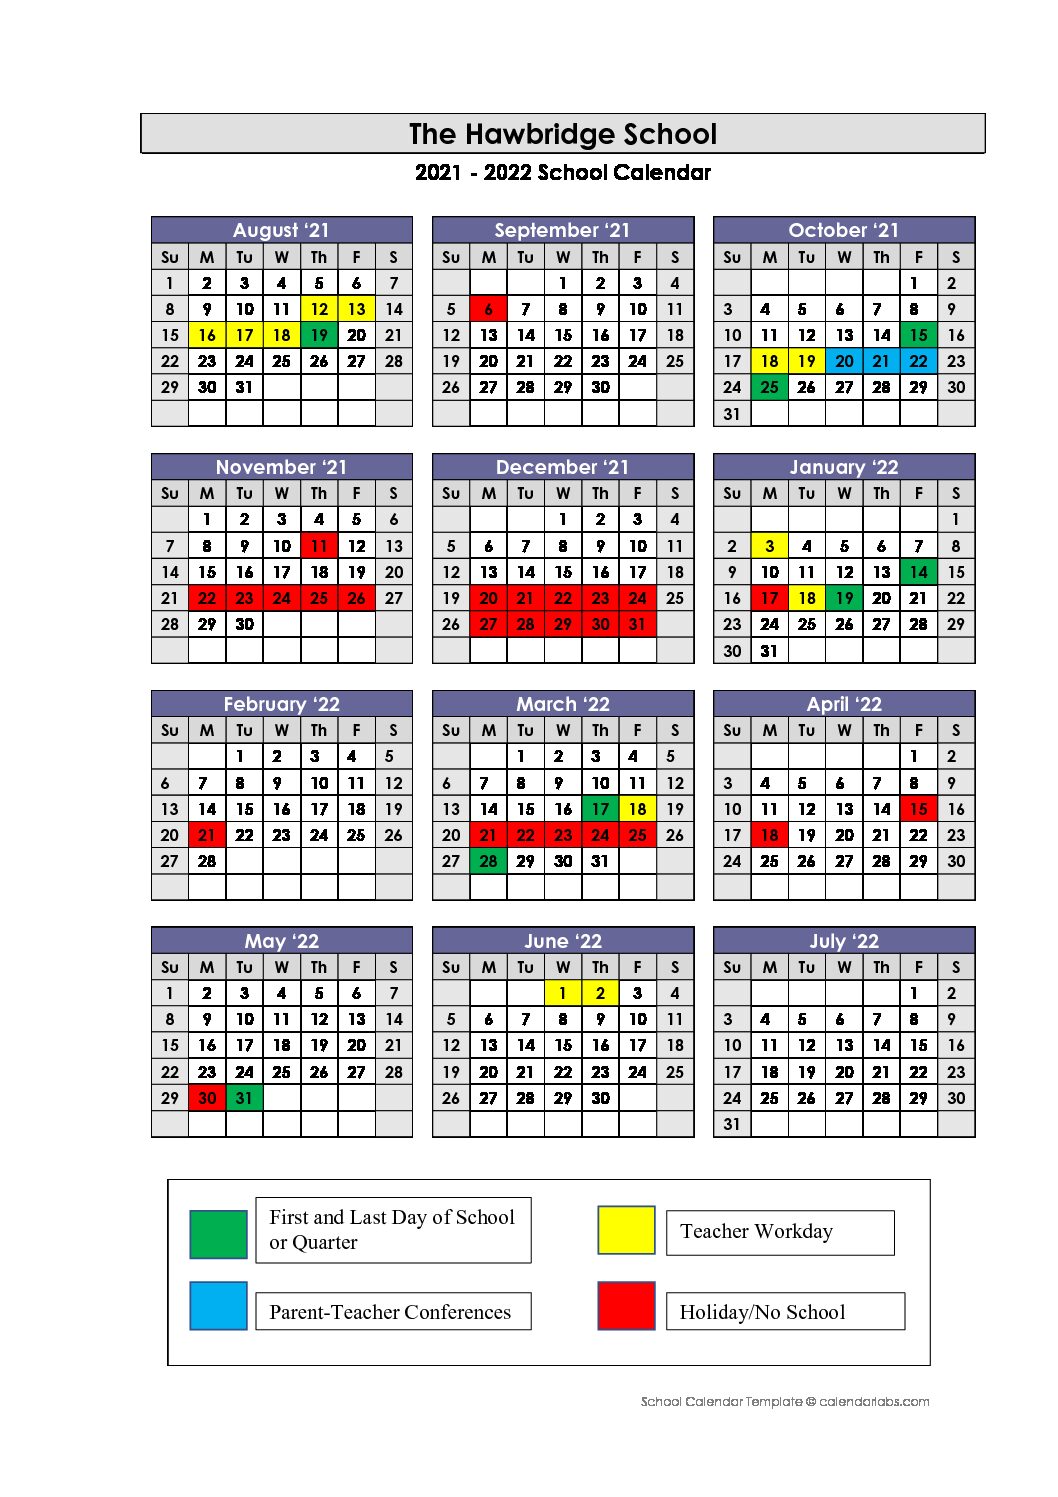 Unc Spring 2022 Calendar - Customize and Print